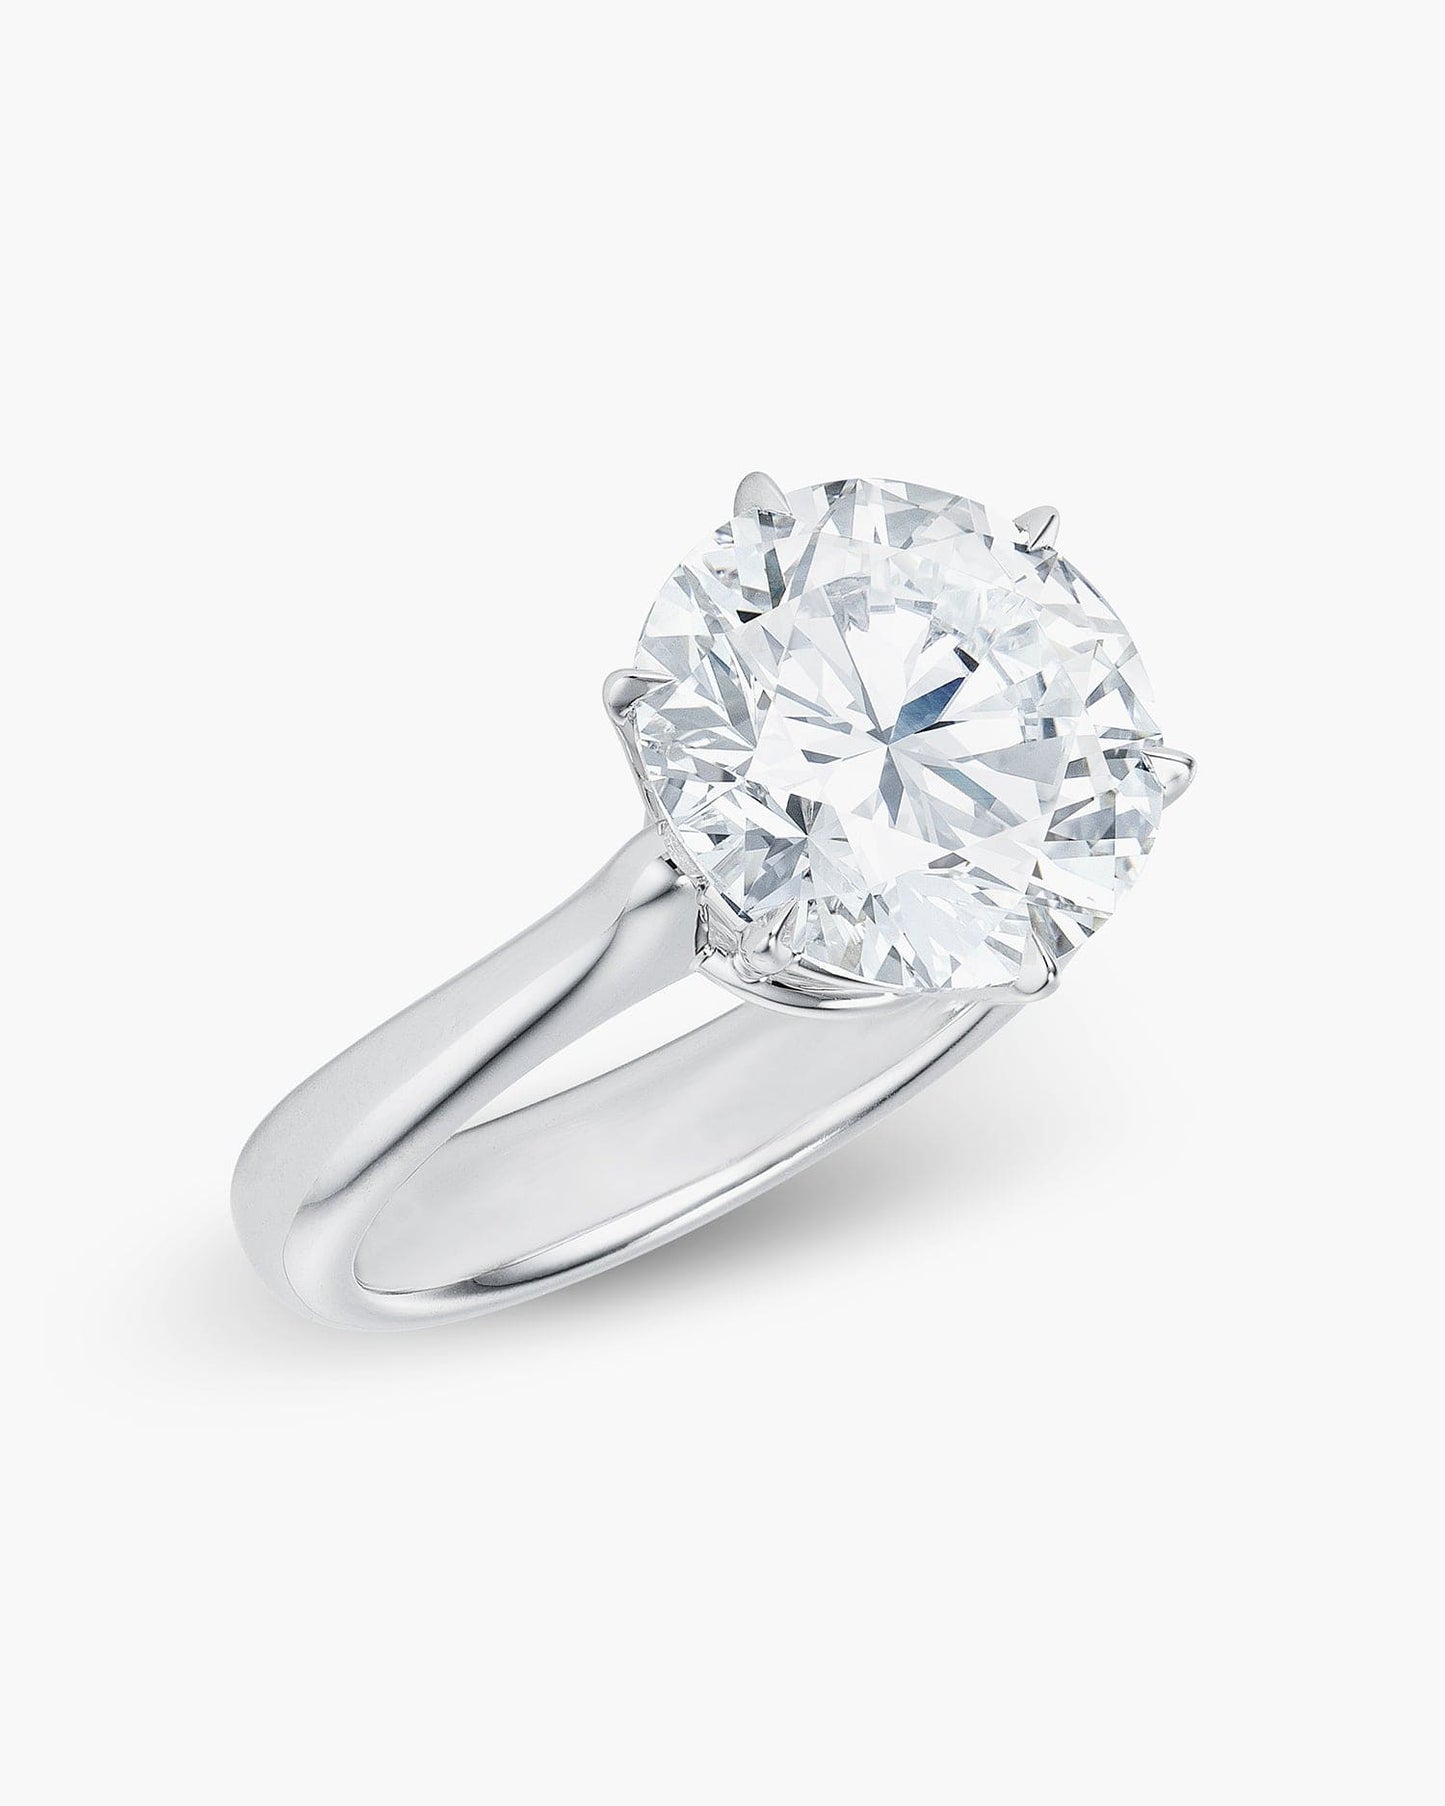 4.70 carat Round Brilliant Cut Diamond Ring